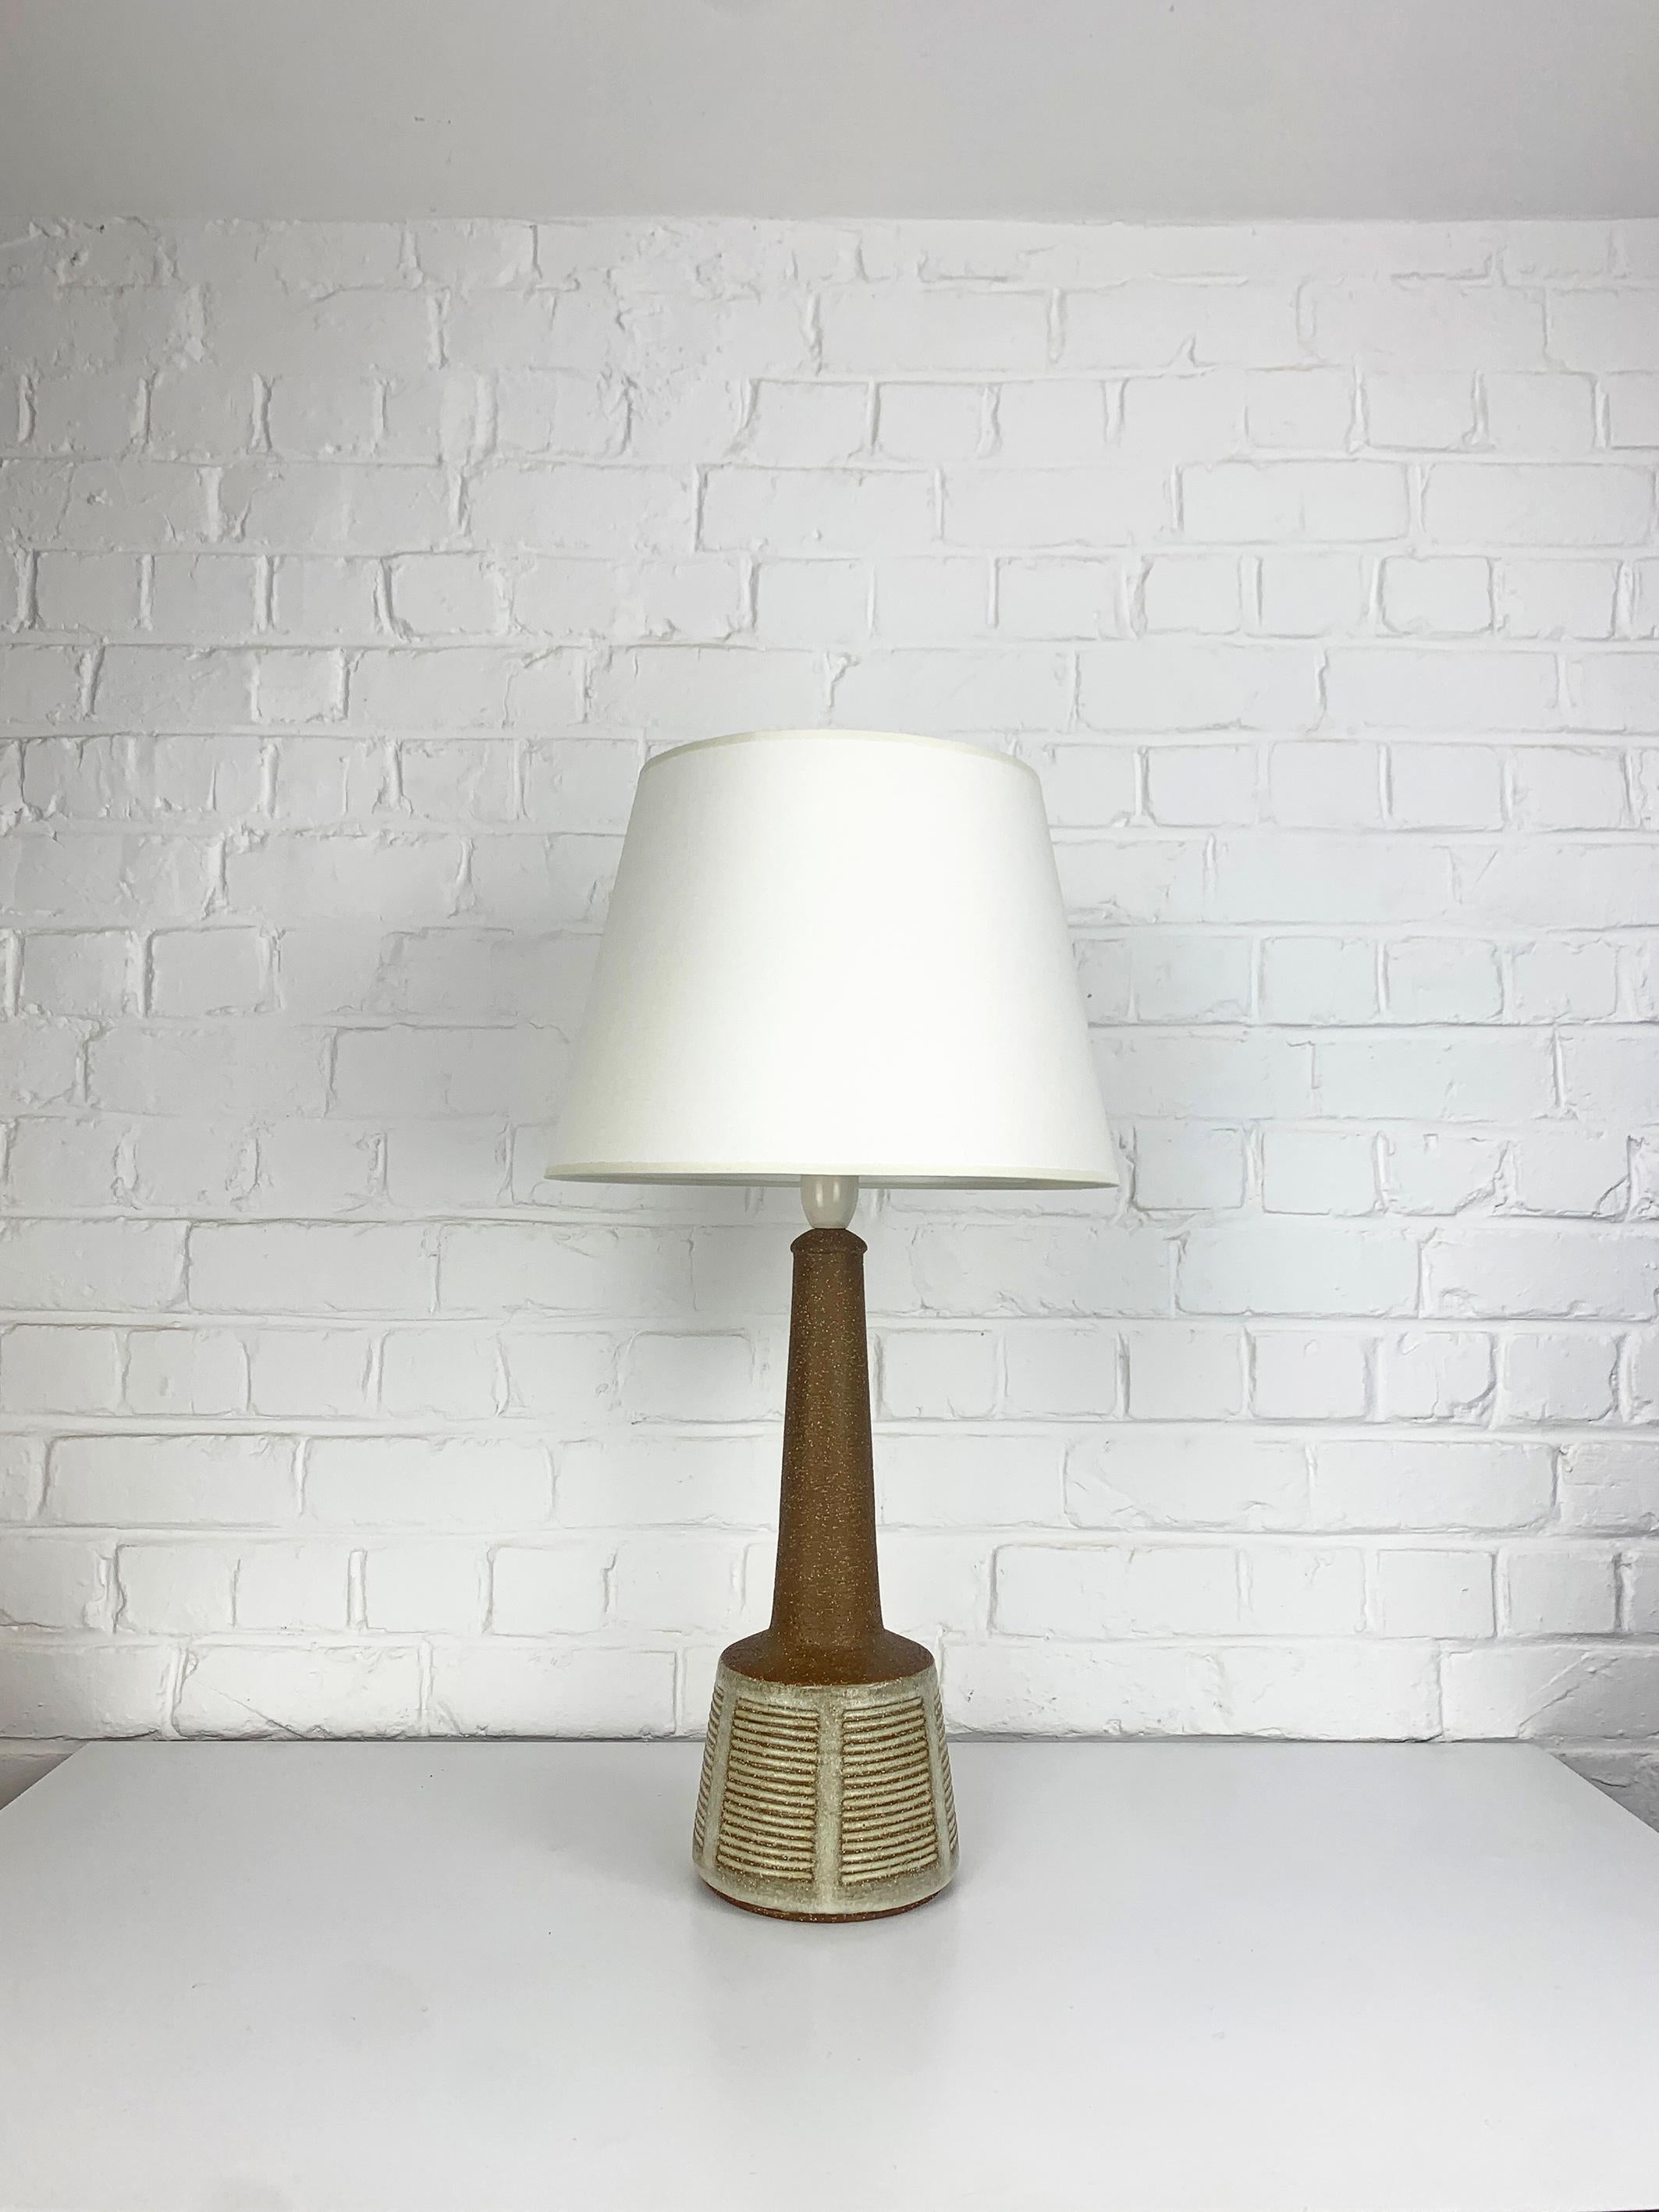 Lampe de table conçue par Esben Klint, fils de Kaare Klint (le célèbre designer de meubles danois). Esben a créé un design intemporel avec ce modèle, il a un côté contemporain et graphique malgré ses plus de 50 ans.

Il a été produit par Palshus